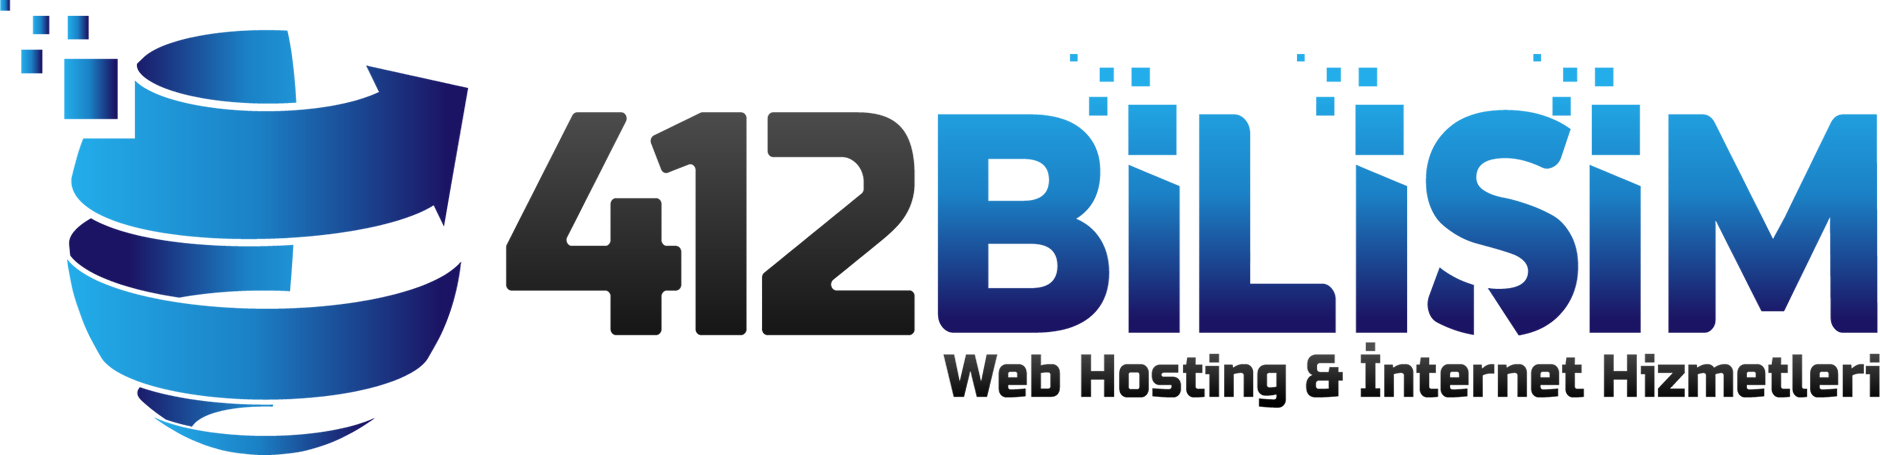 412 Bilişim Web Hosting & İnternet Hizmetleri